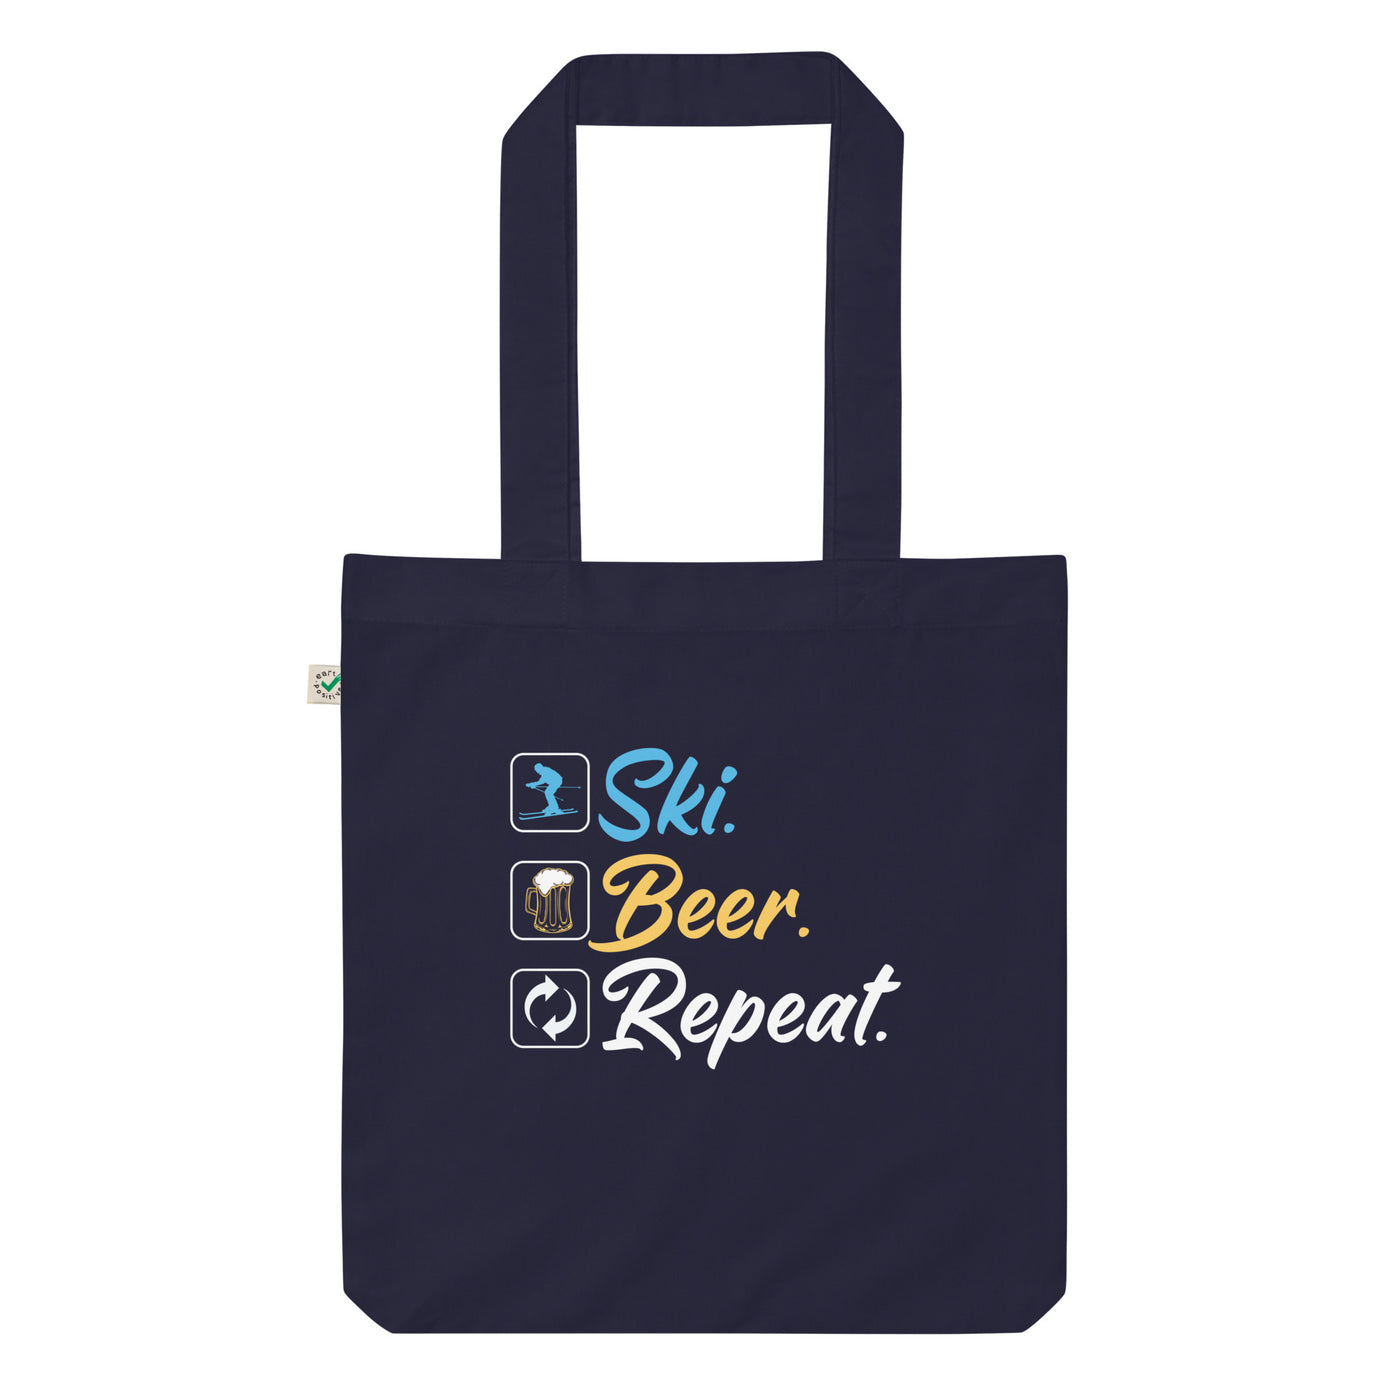 Ski. Beer. Repeat. - (S.K) - Organic Einkaufstasche klettern Navy